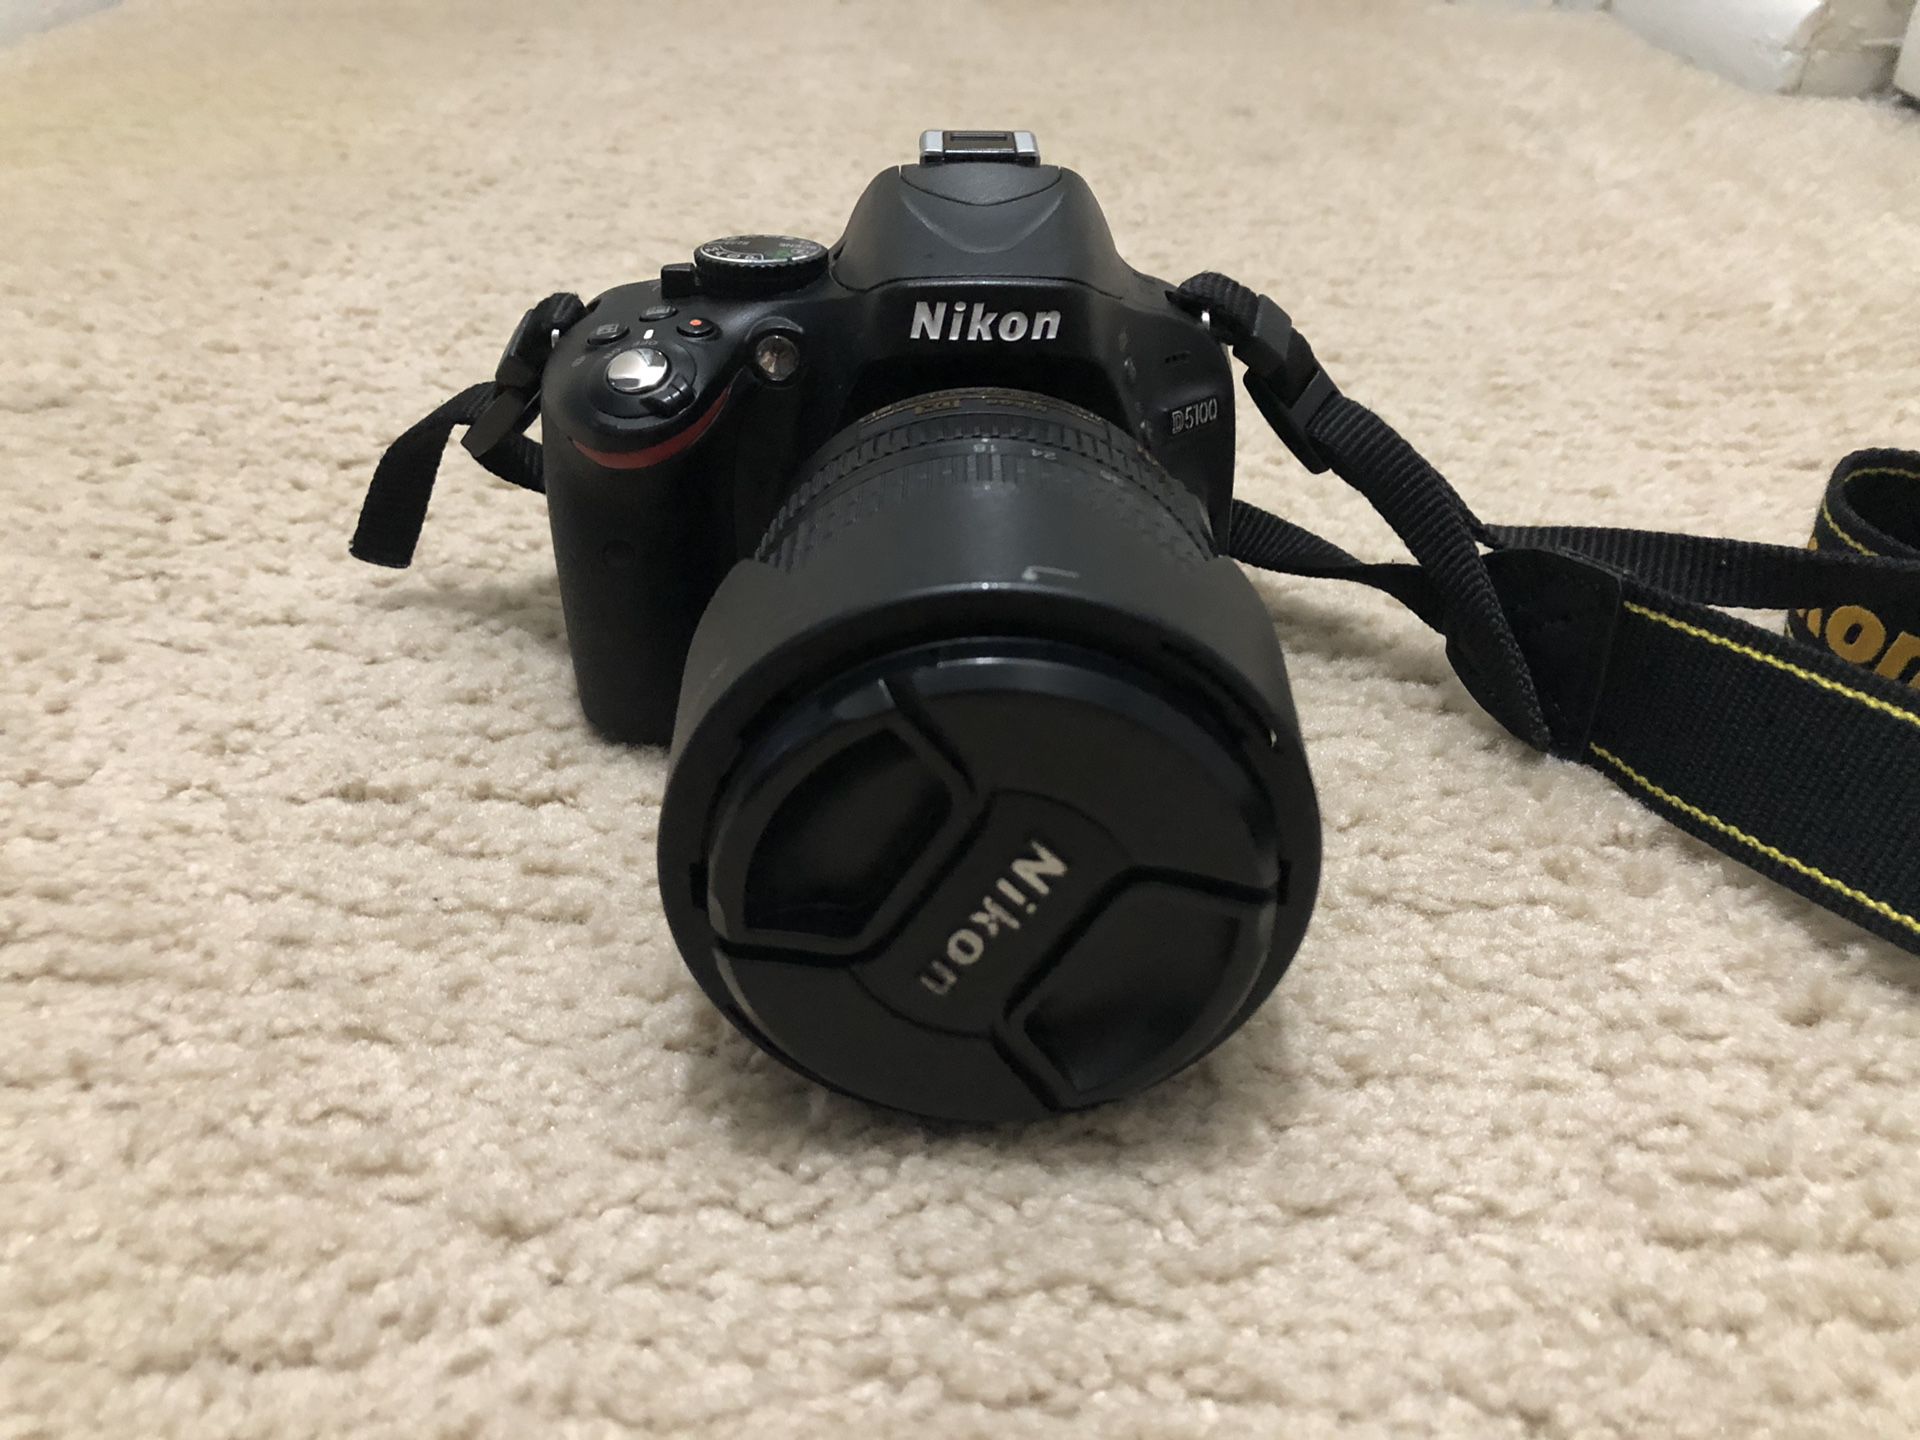 Nikon D5100 + 18-105mm lens